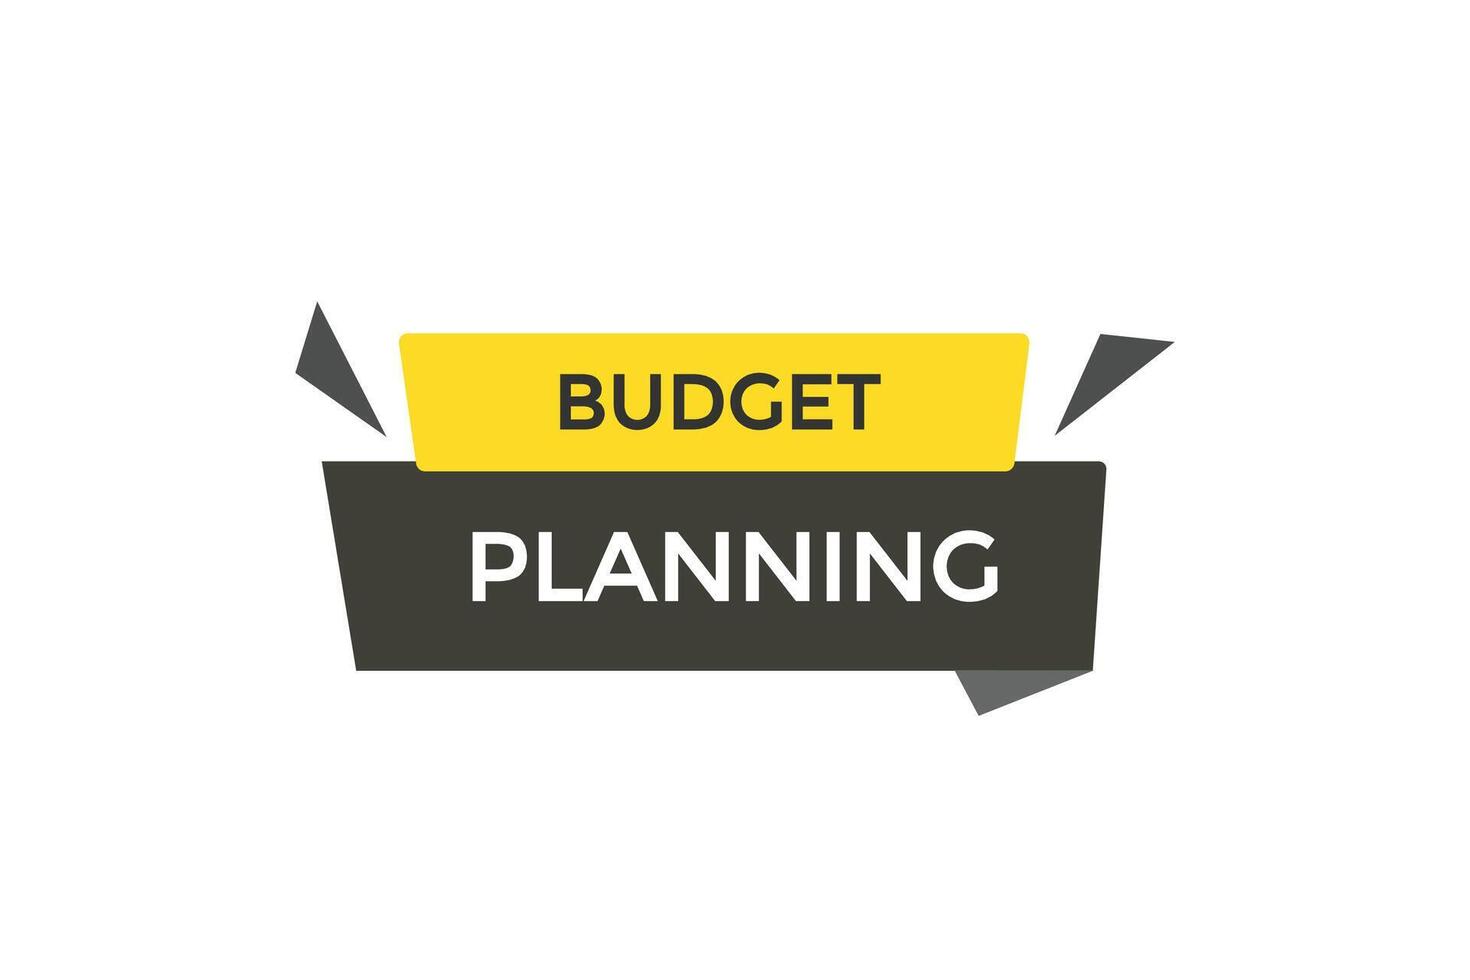 Neu Webseite Budget Planung klicken Taste lernen bleibe bleibe abgestimmt, eben, Zeichen, Rede, Blase Banner modern, Symbol, klicken, vektor